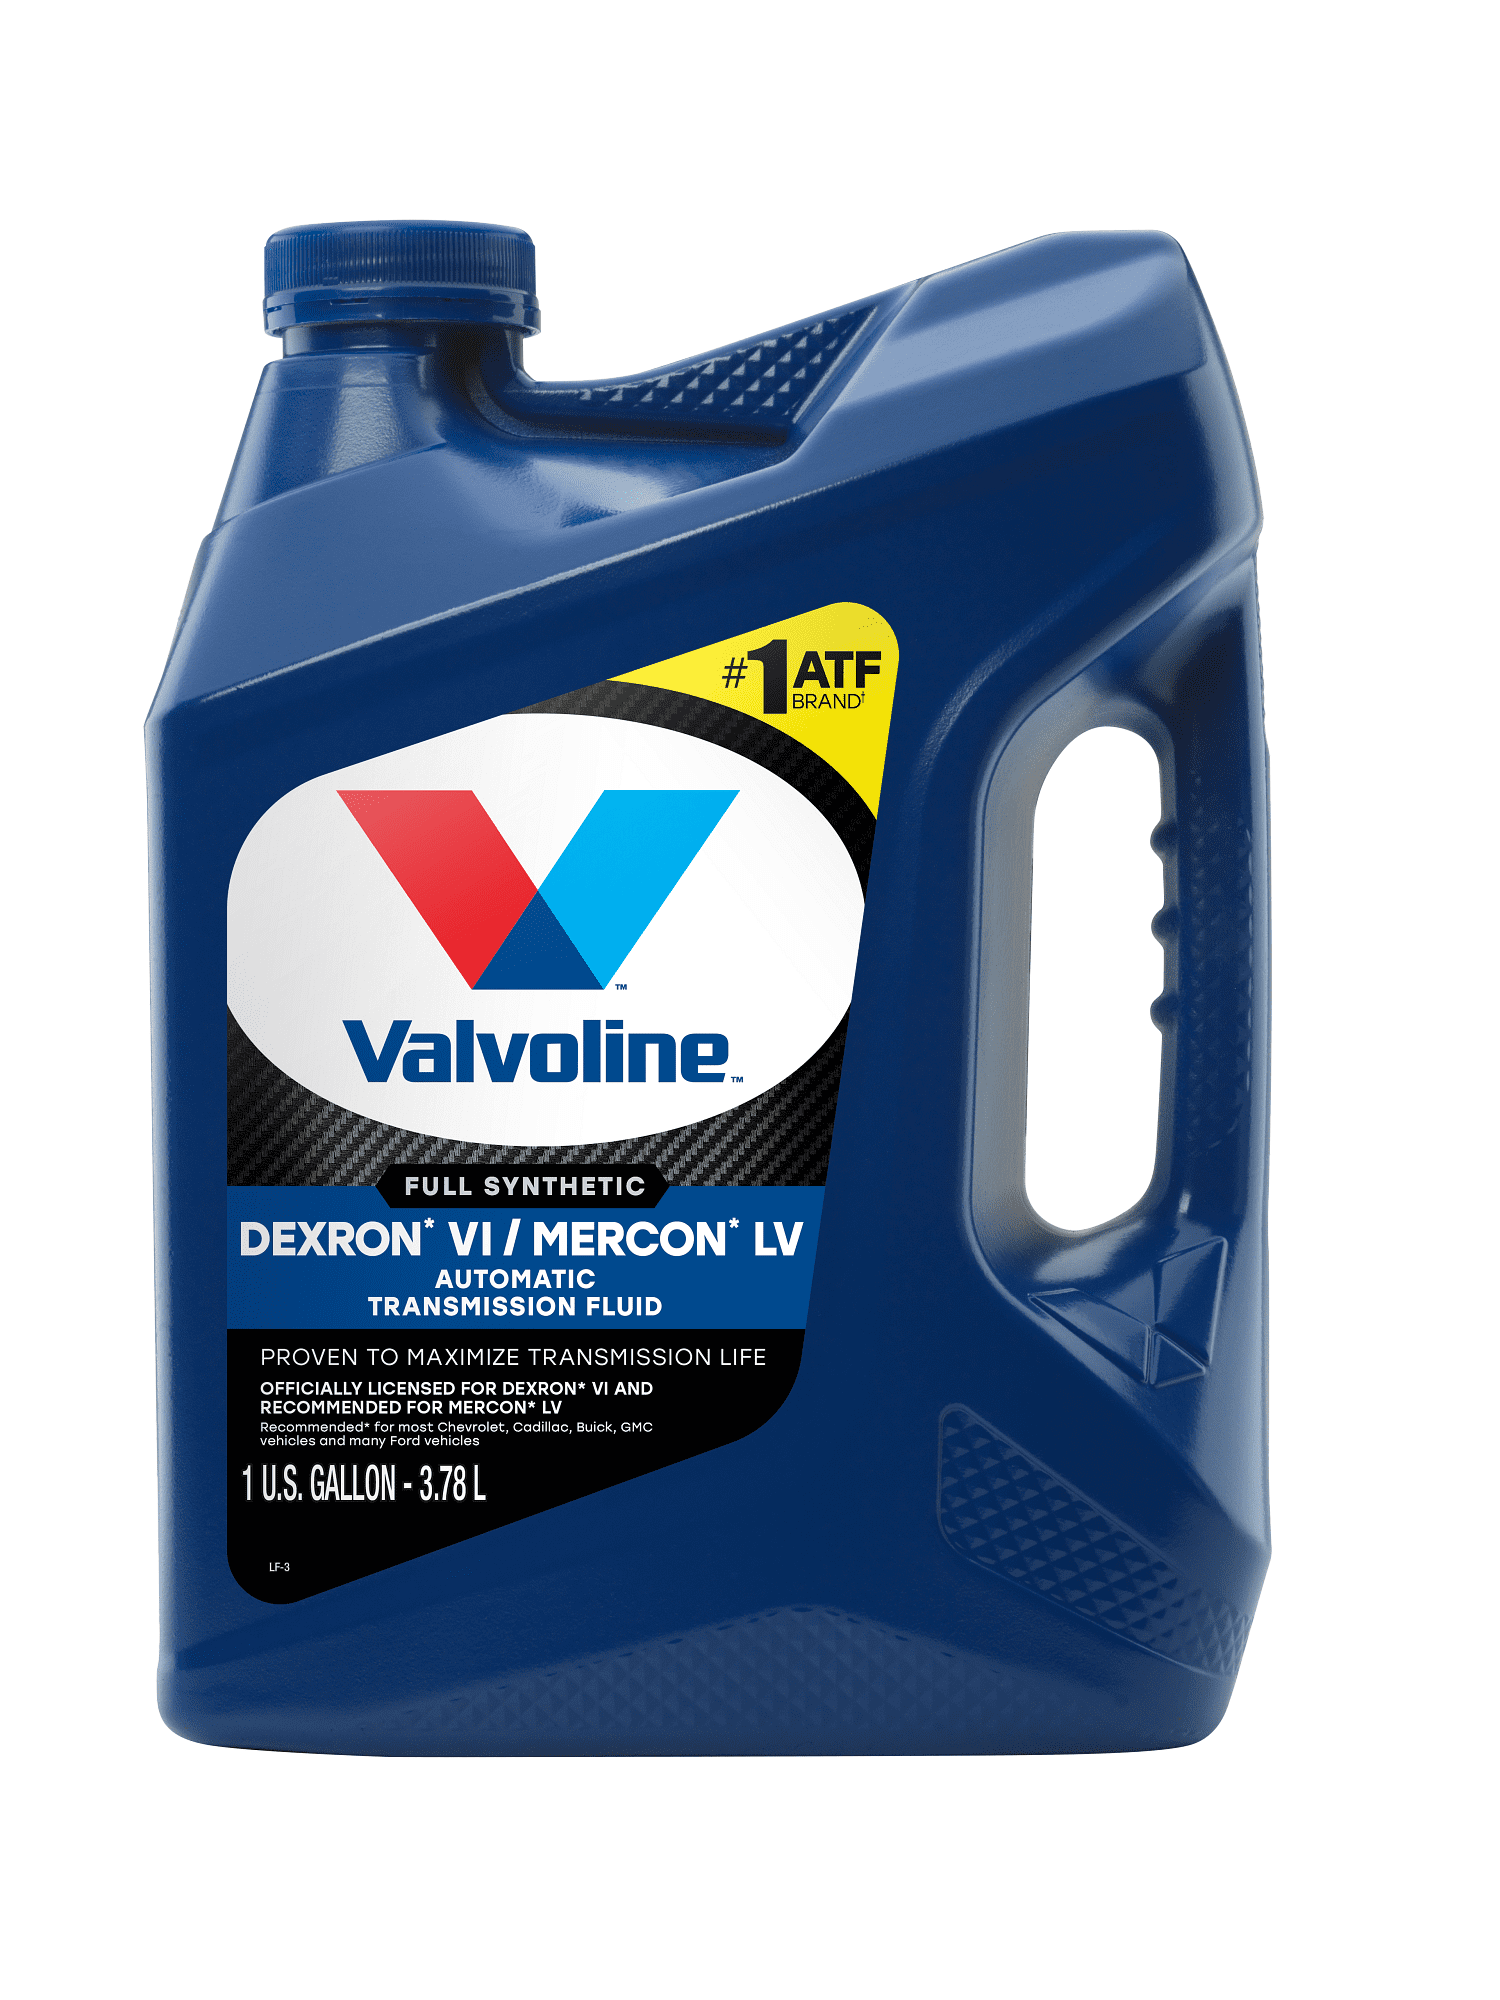 Valvoline ATF Dexron VI/Mercon LV Full Synthetic , 1 Gallon